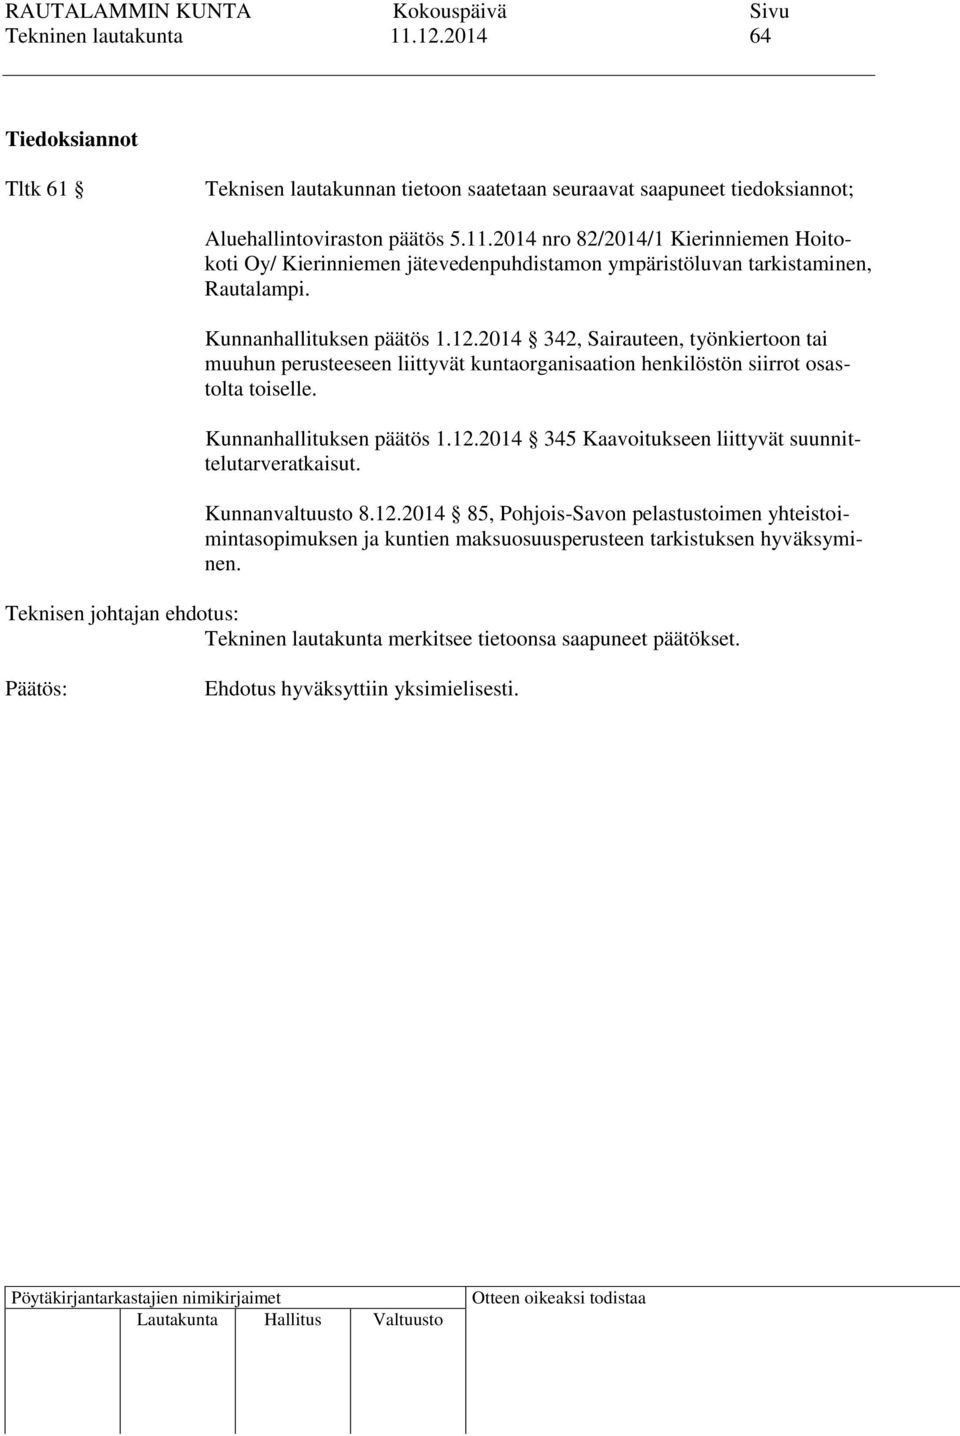 Kunnanhallituksen päätös 1.12.2014 345 Kaavoitukseen liittyvät suunnittelutarveratkaisut. Kunnanvaltuusto 8.12.2014 85, Pohjois-Savon pelastustoimen yhteistoimintasopimuksen ja kuntien maksuosuusperusteen tarkistuksen hyväksyminen.